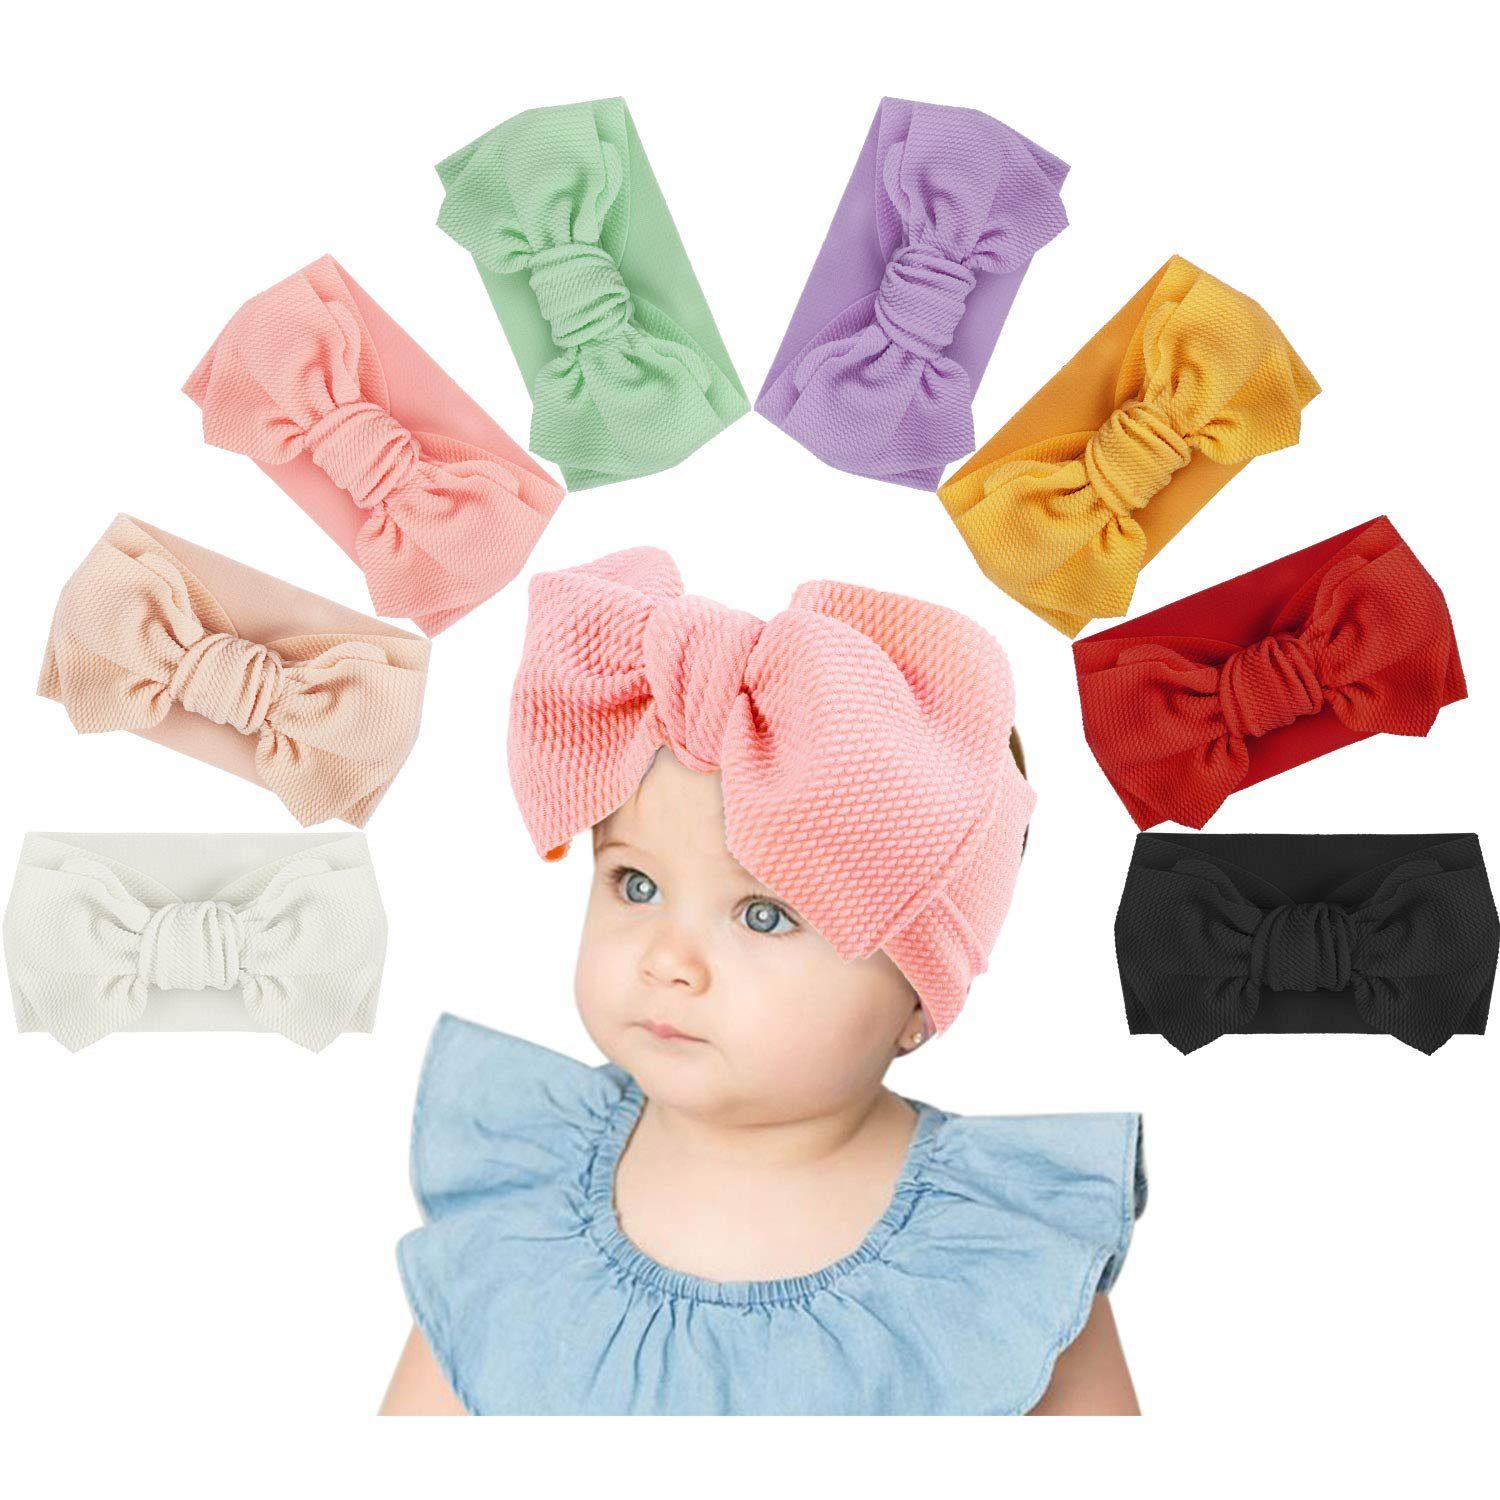 Gwotfy 9 Stück Baby Stirnbänder Baby Turban Stirnband Set-Bowknot Haarband weiche süße Kopfbedeckung elastisch für Neugeborene/Mädchen/Jungen/Kinder Baby Kleinkind Haarband 